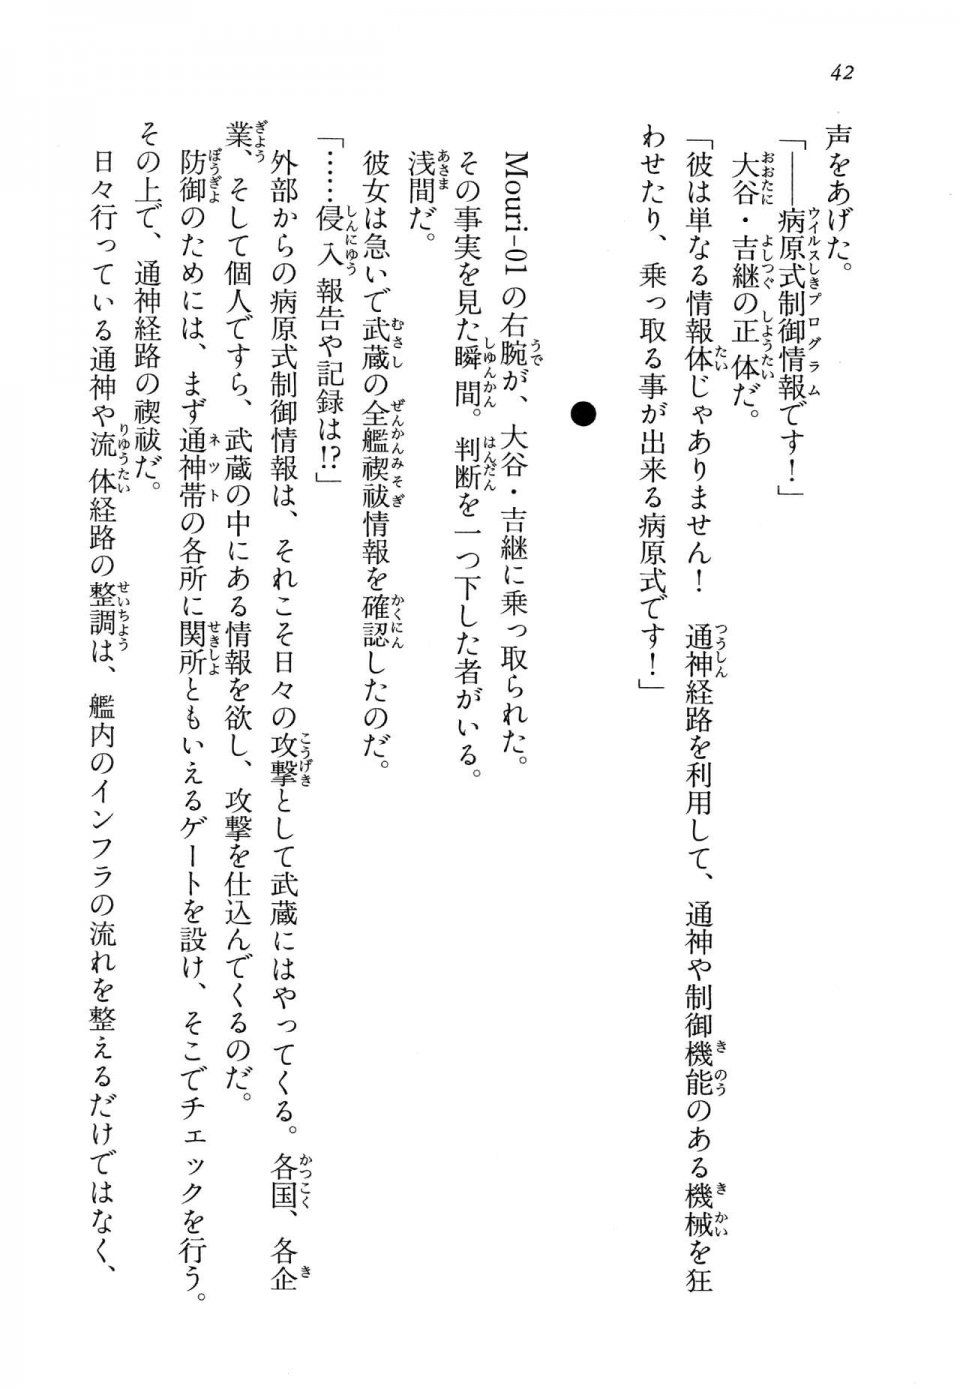 Kyoukai Senjou no Horizon LN Vol 14(6B) - Photo #42